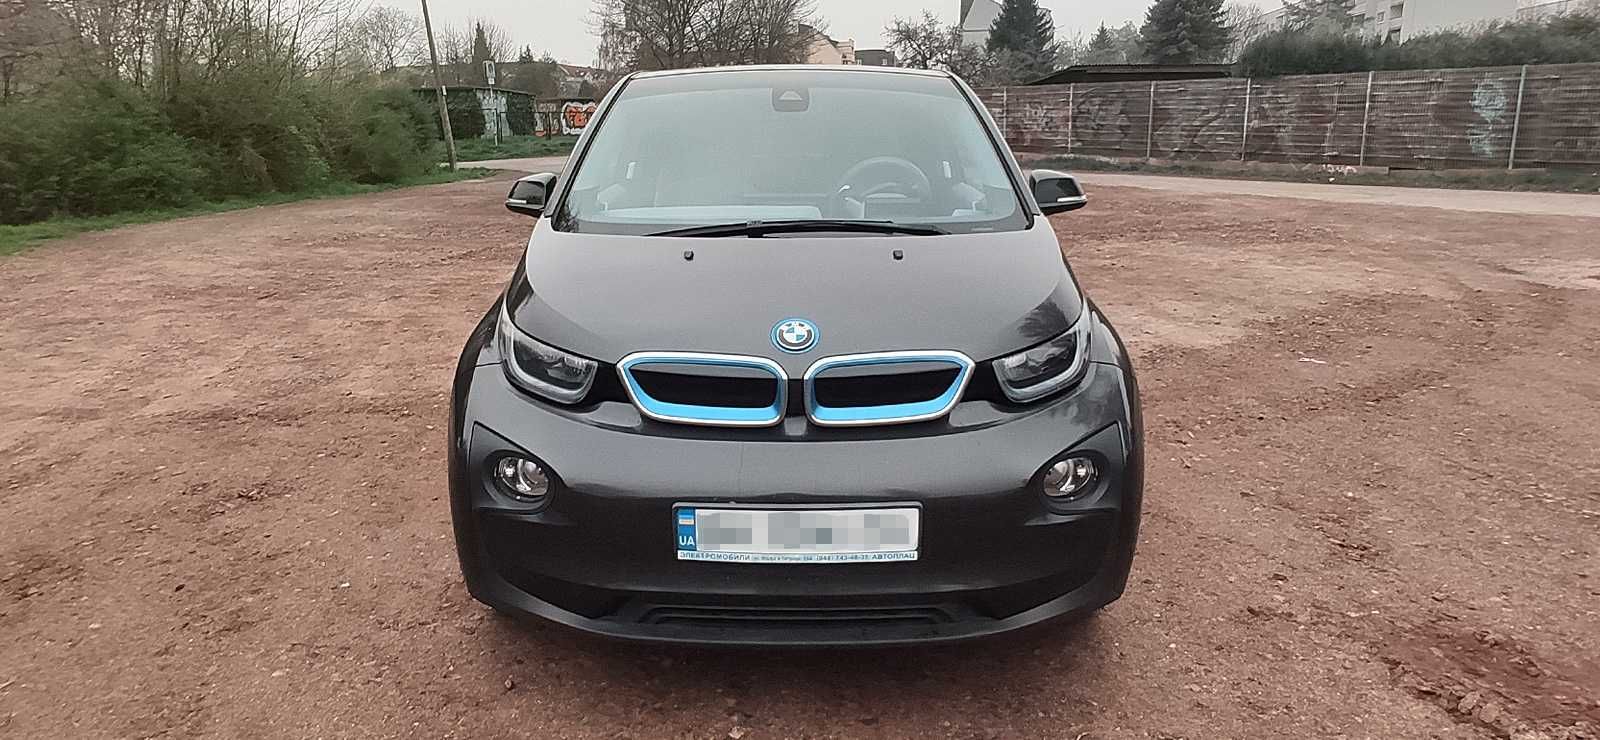 Продам своє авто BMW i3 2015 р. (60 т.км.)